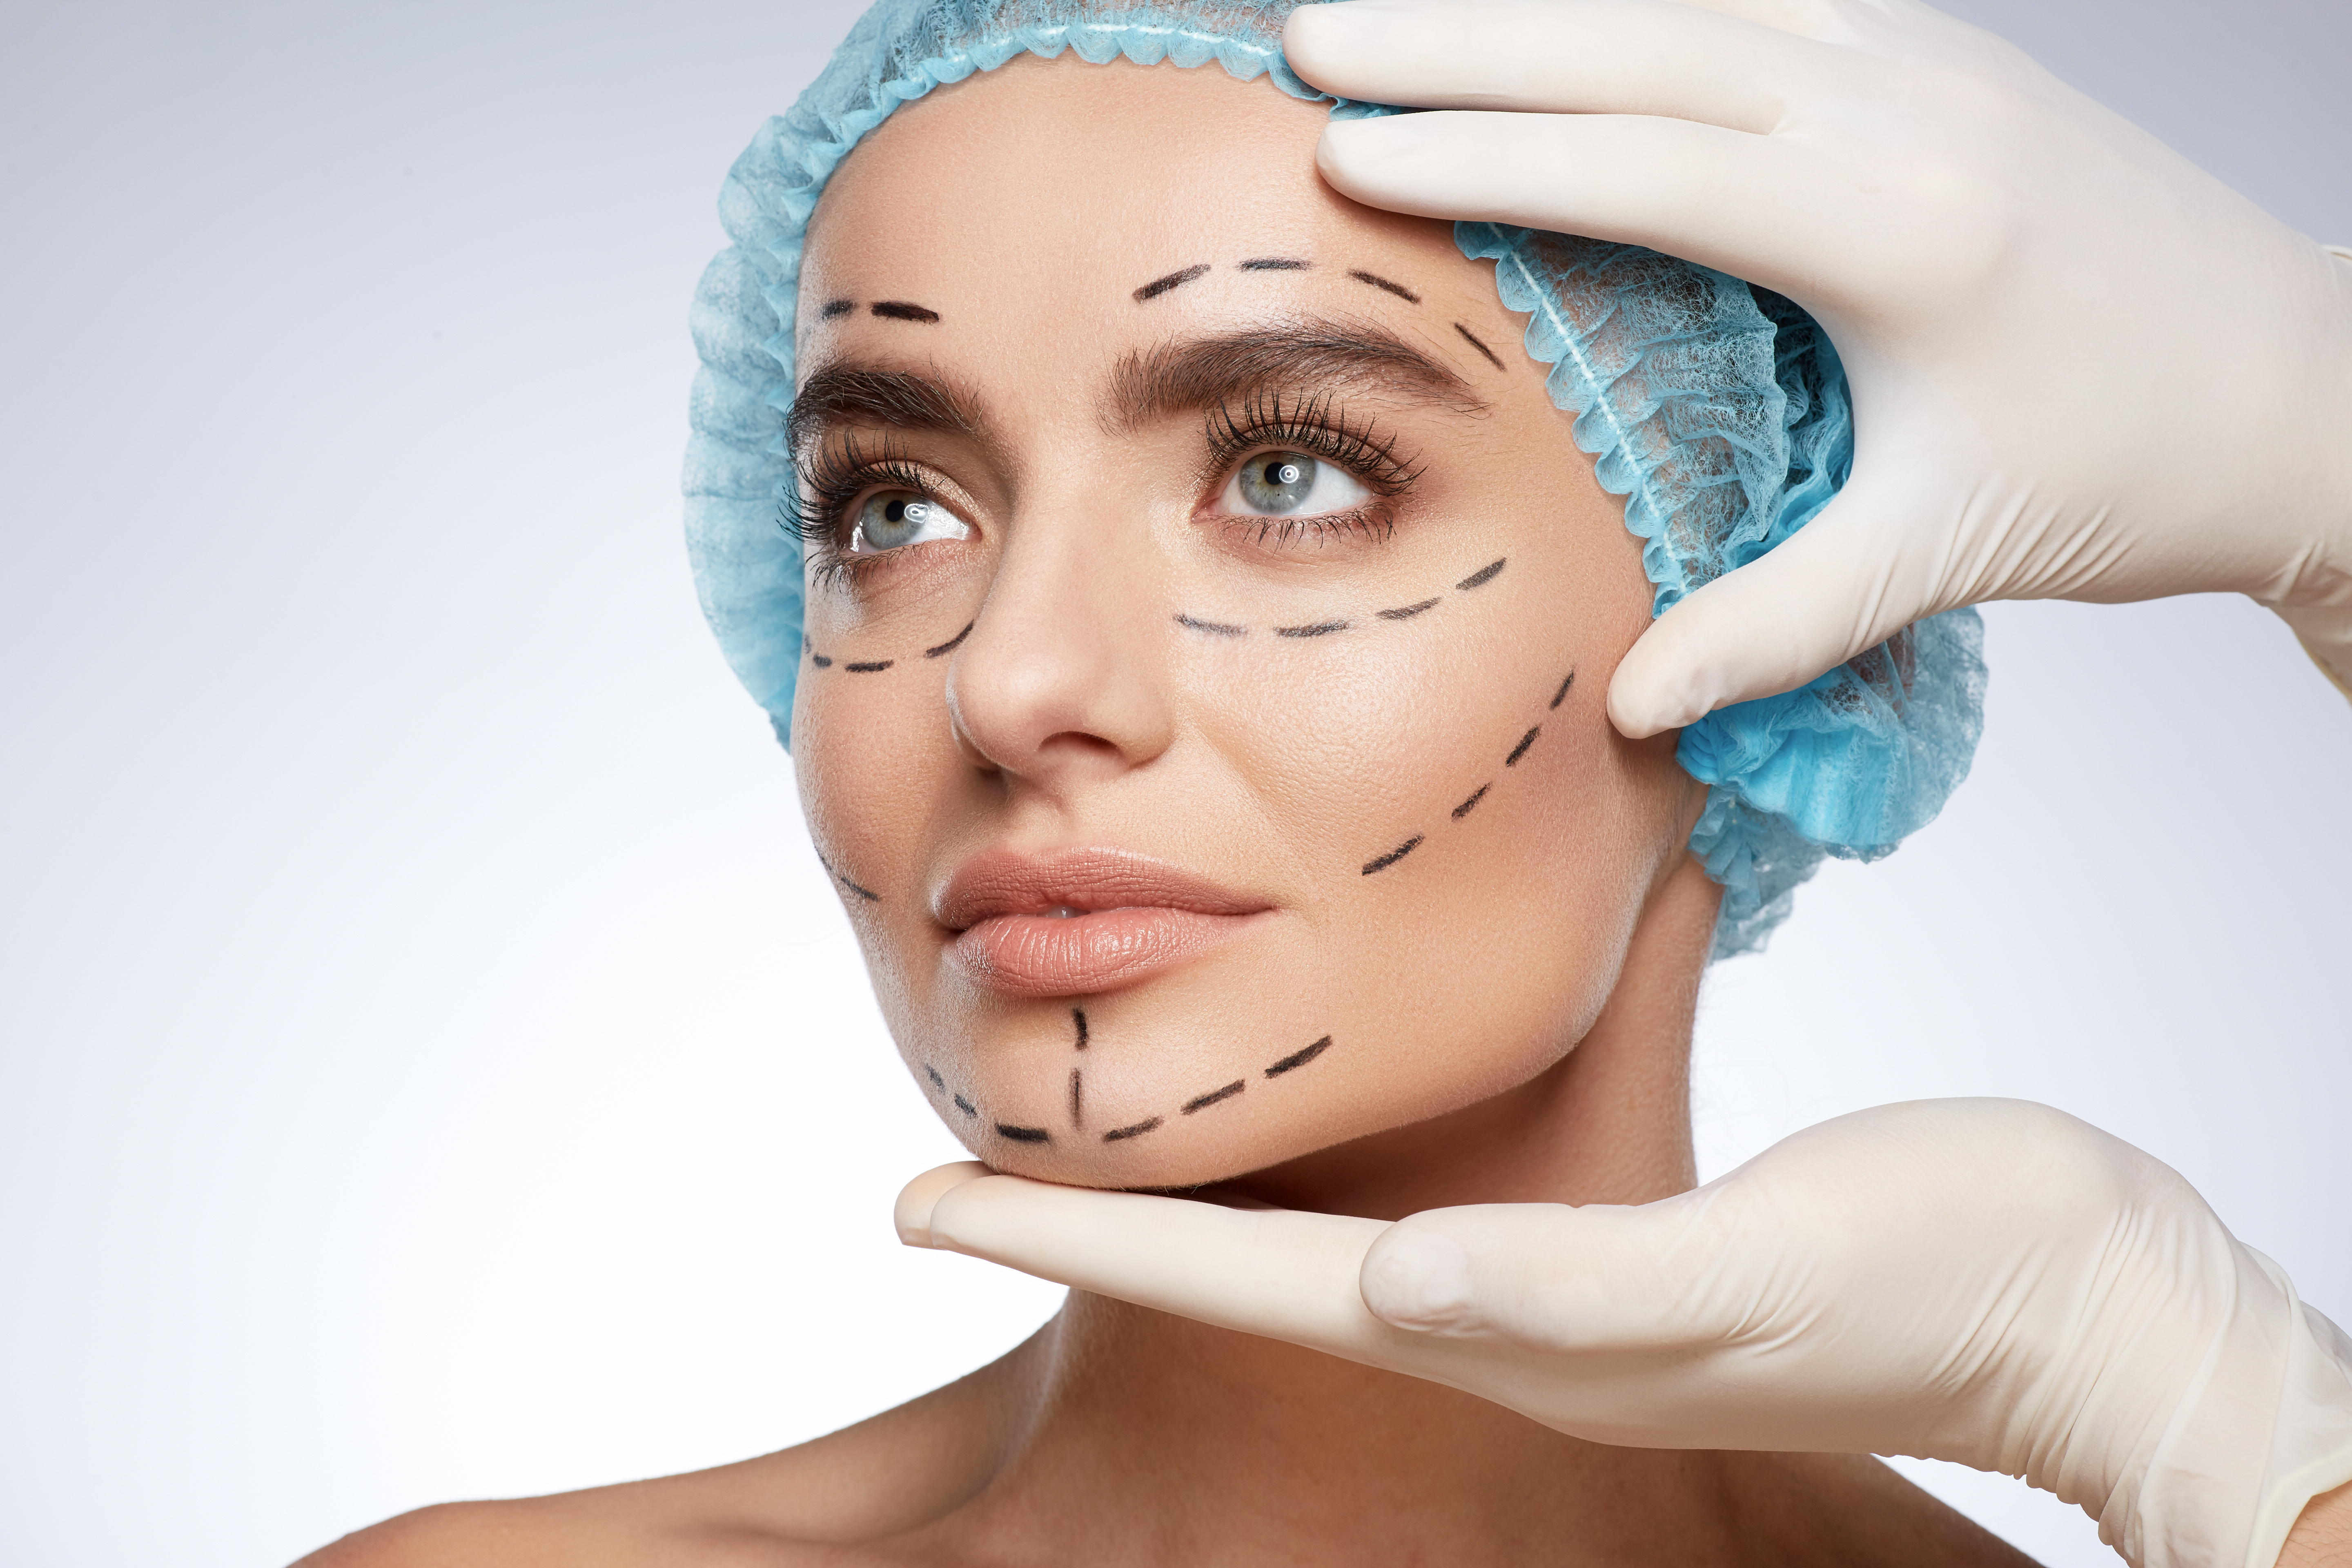 Cirugía plástica facial